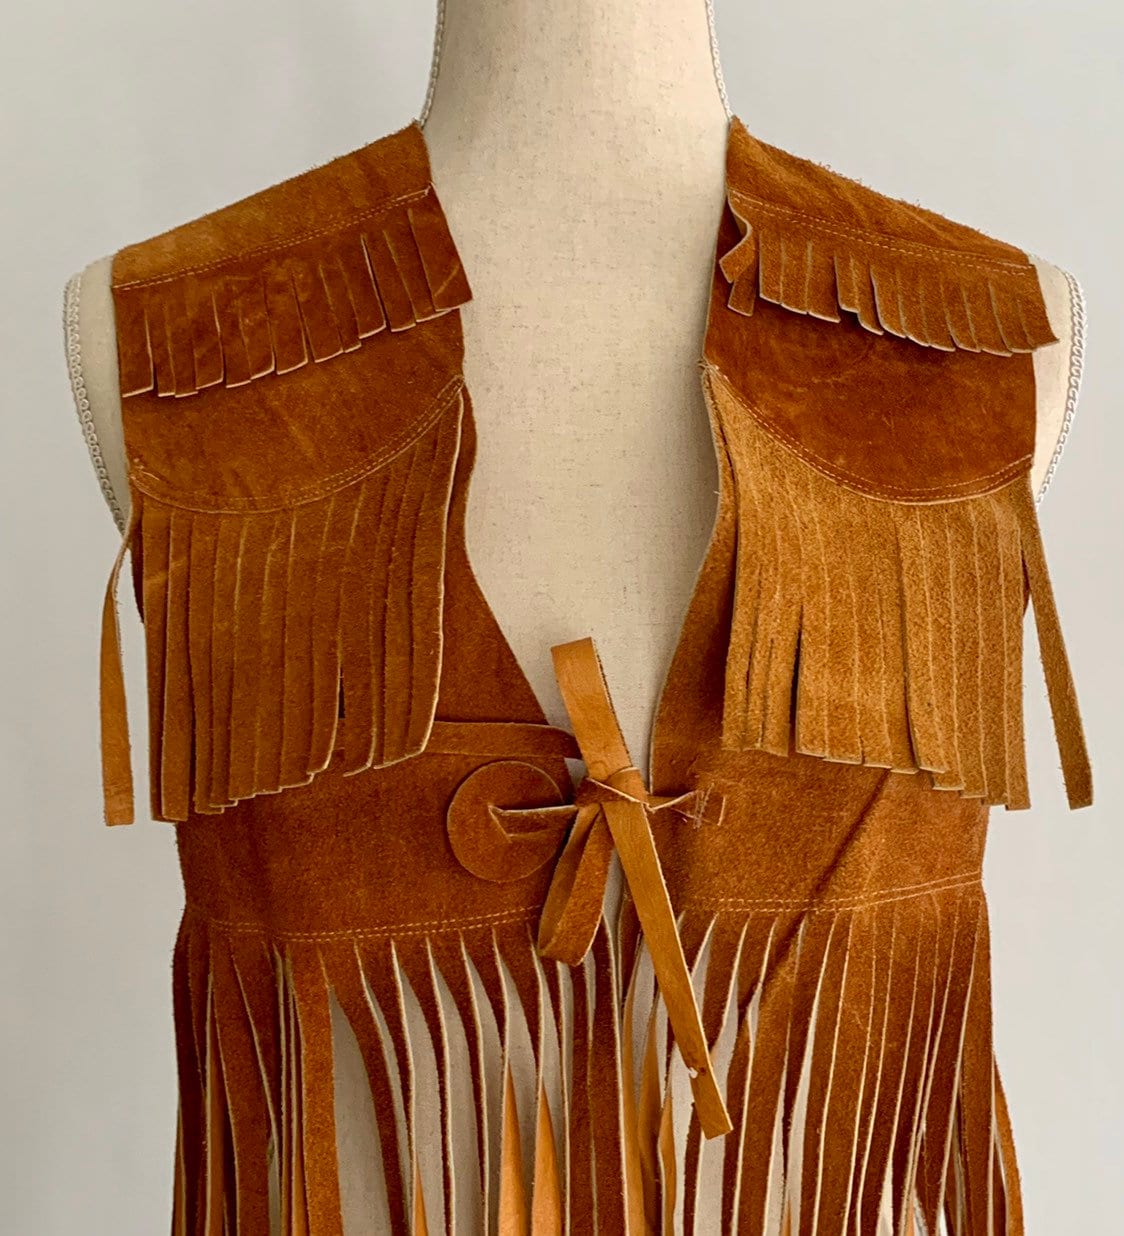 Western Leather Fringe Vest Topper Dress Vintage Handmade in Mexico ...